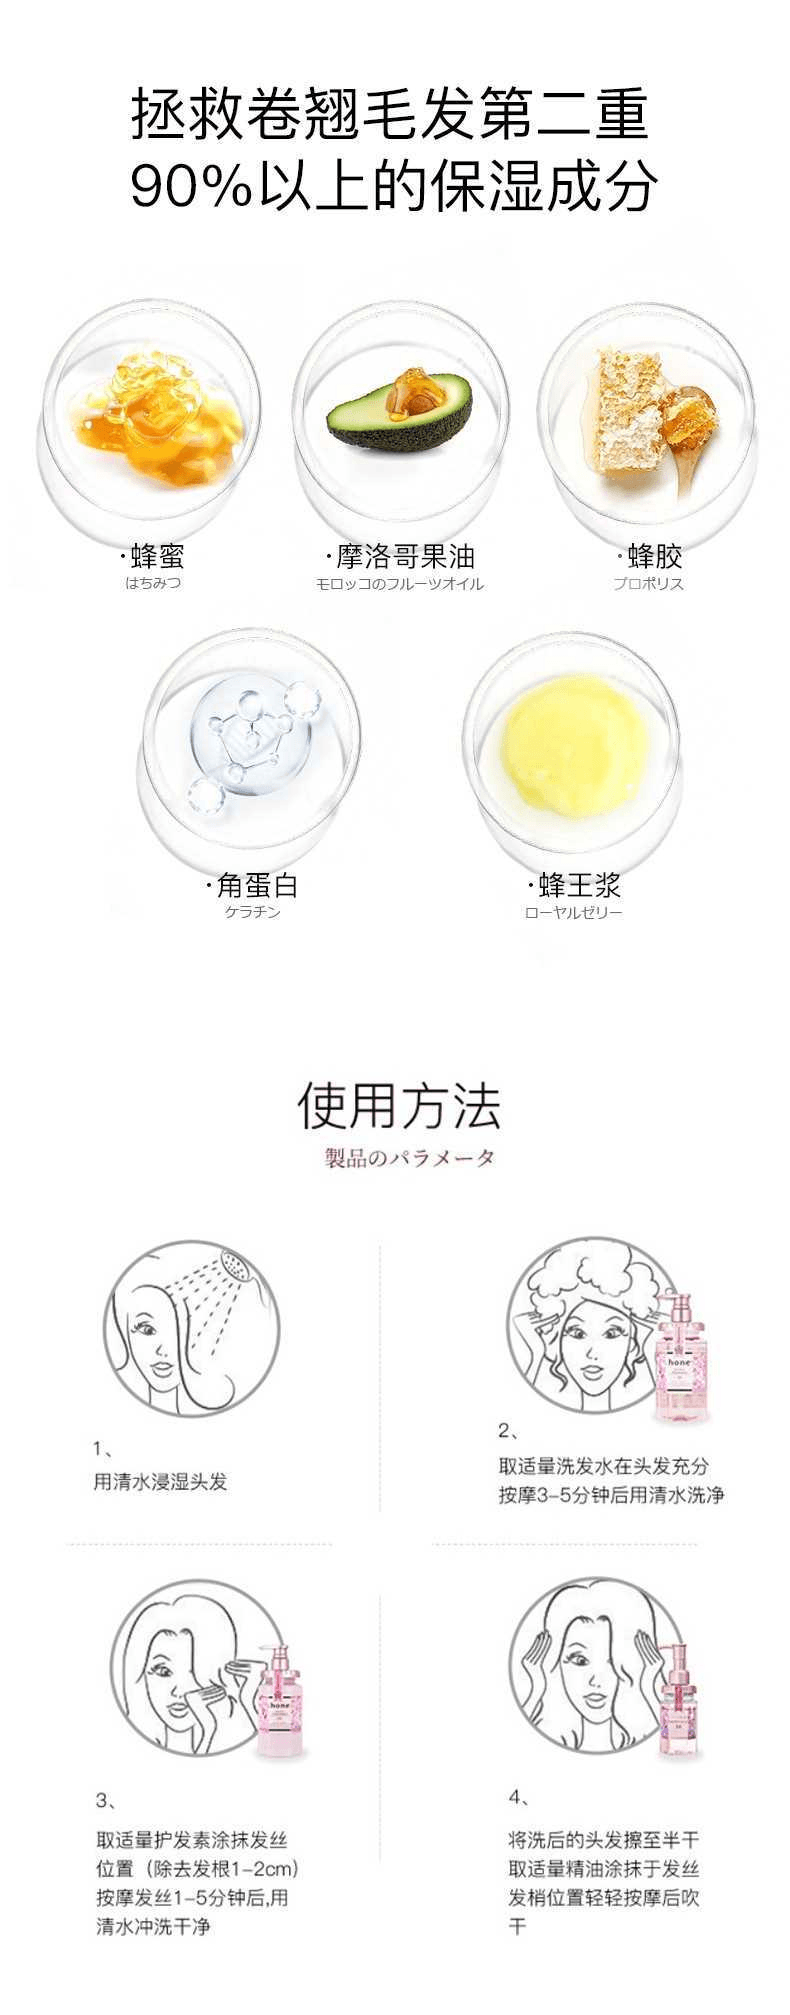 【日本直效郵件】&Honey安蒂花子 Melty系列 玫瑰蜂蜜保濕護髮膏 130g